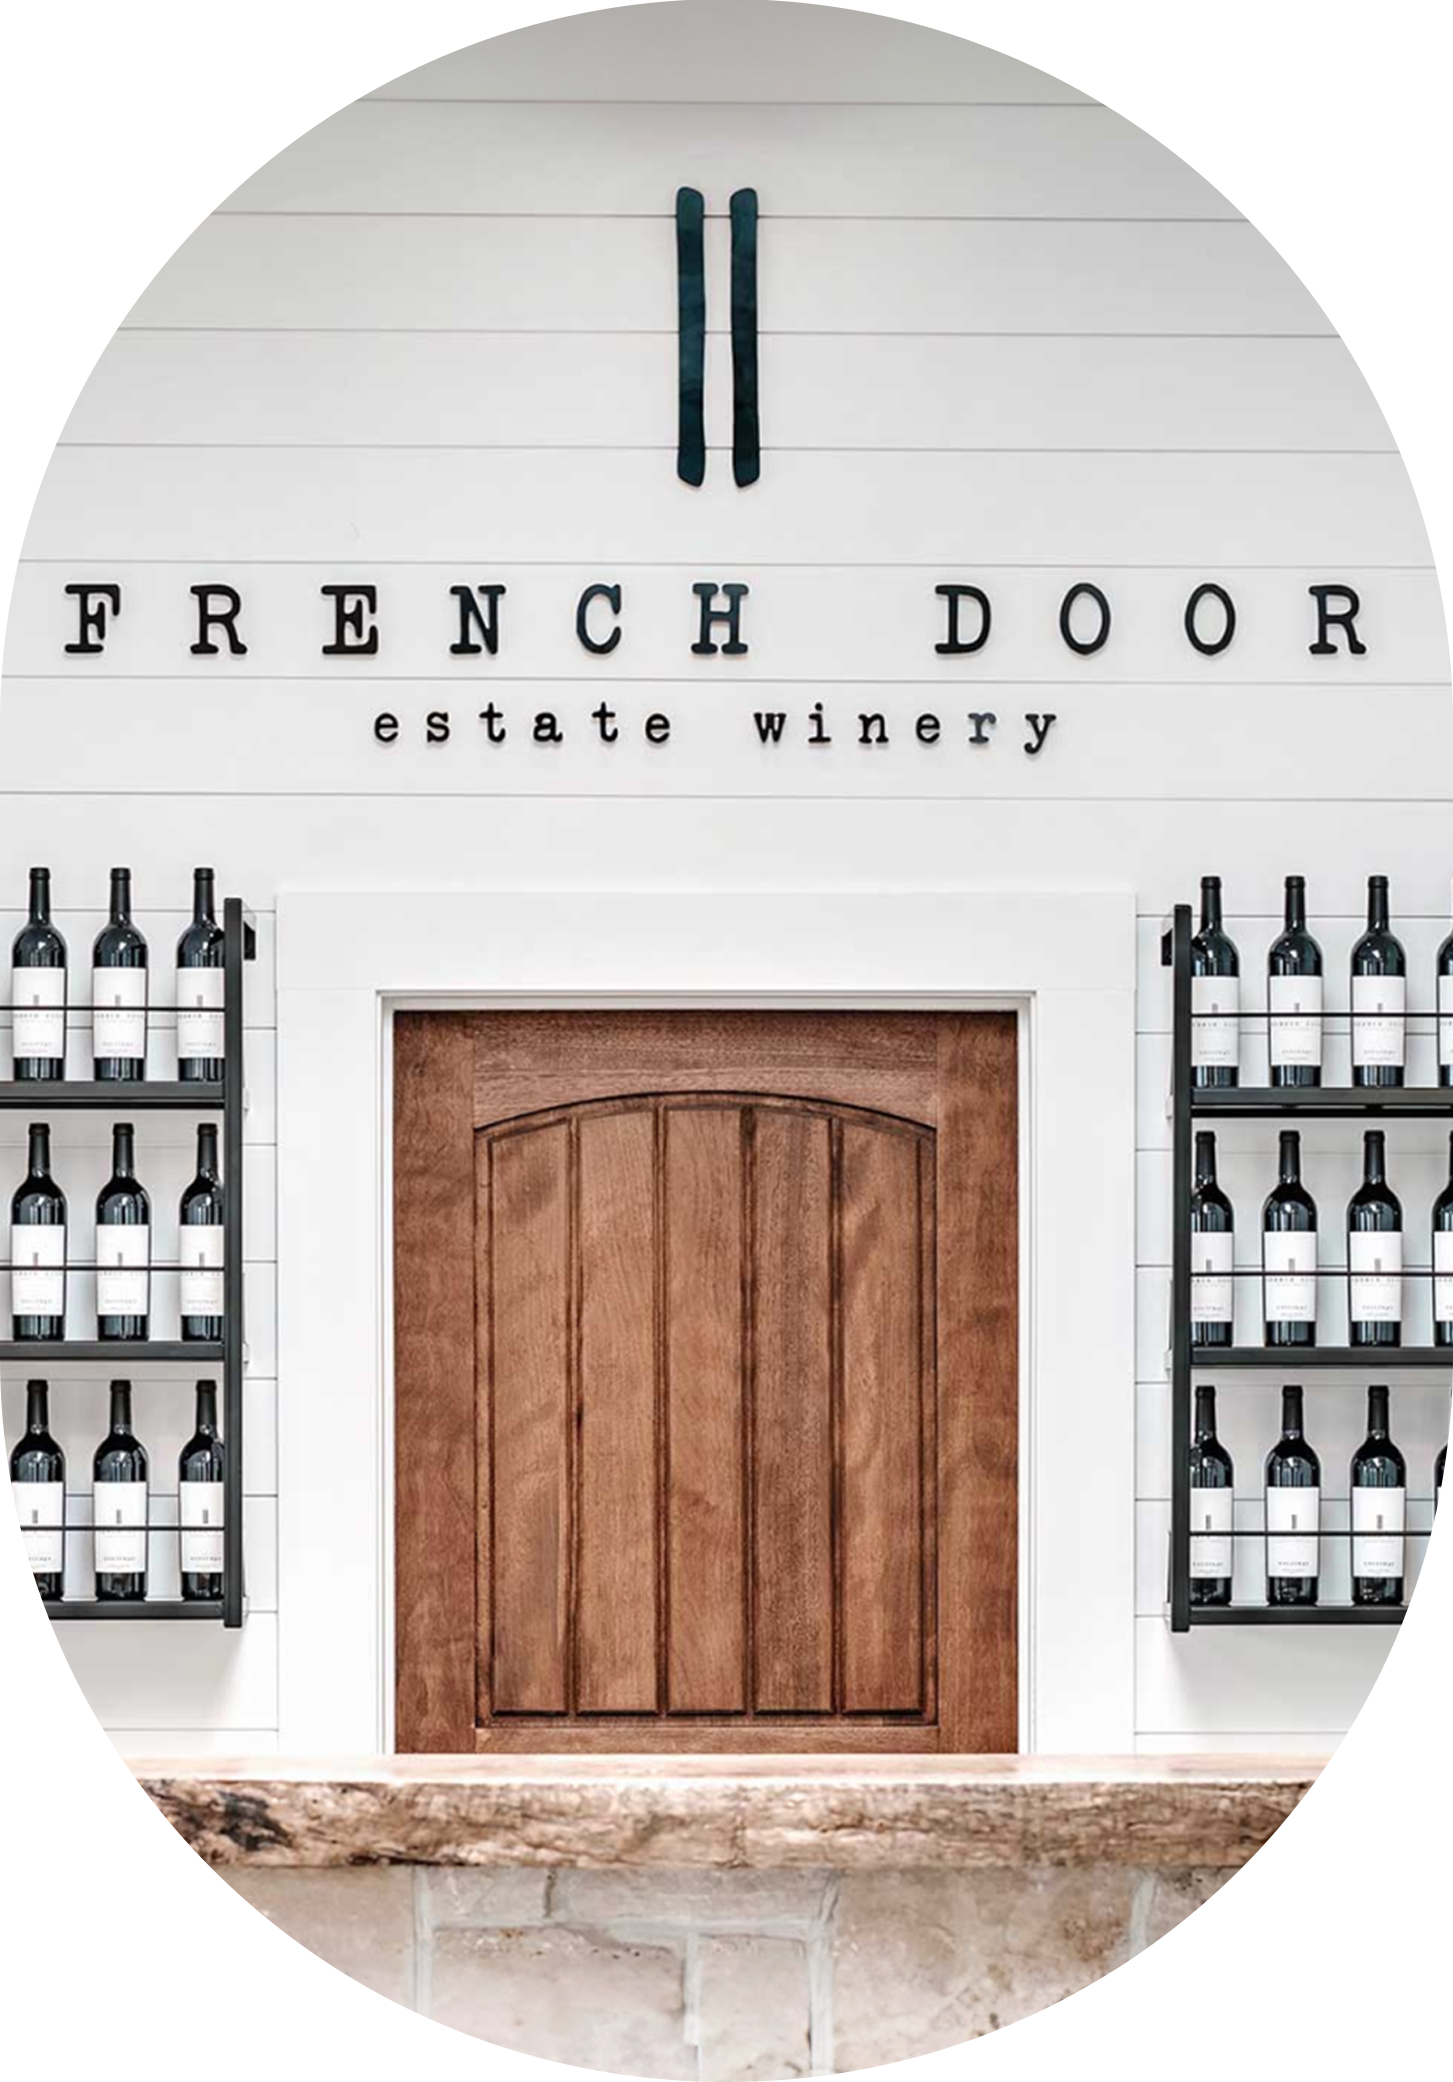 Notable Vineyard - French Door Winery